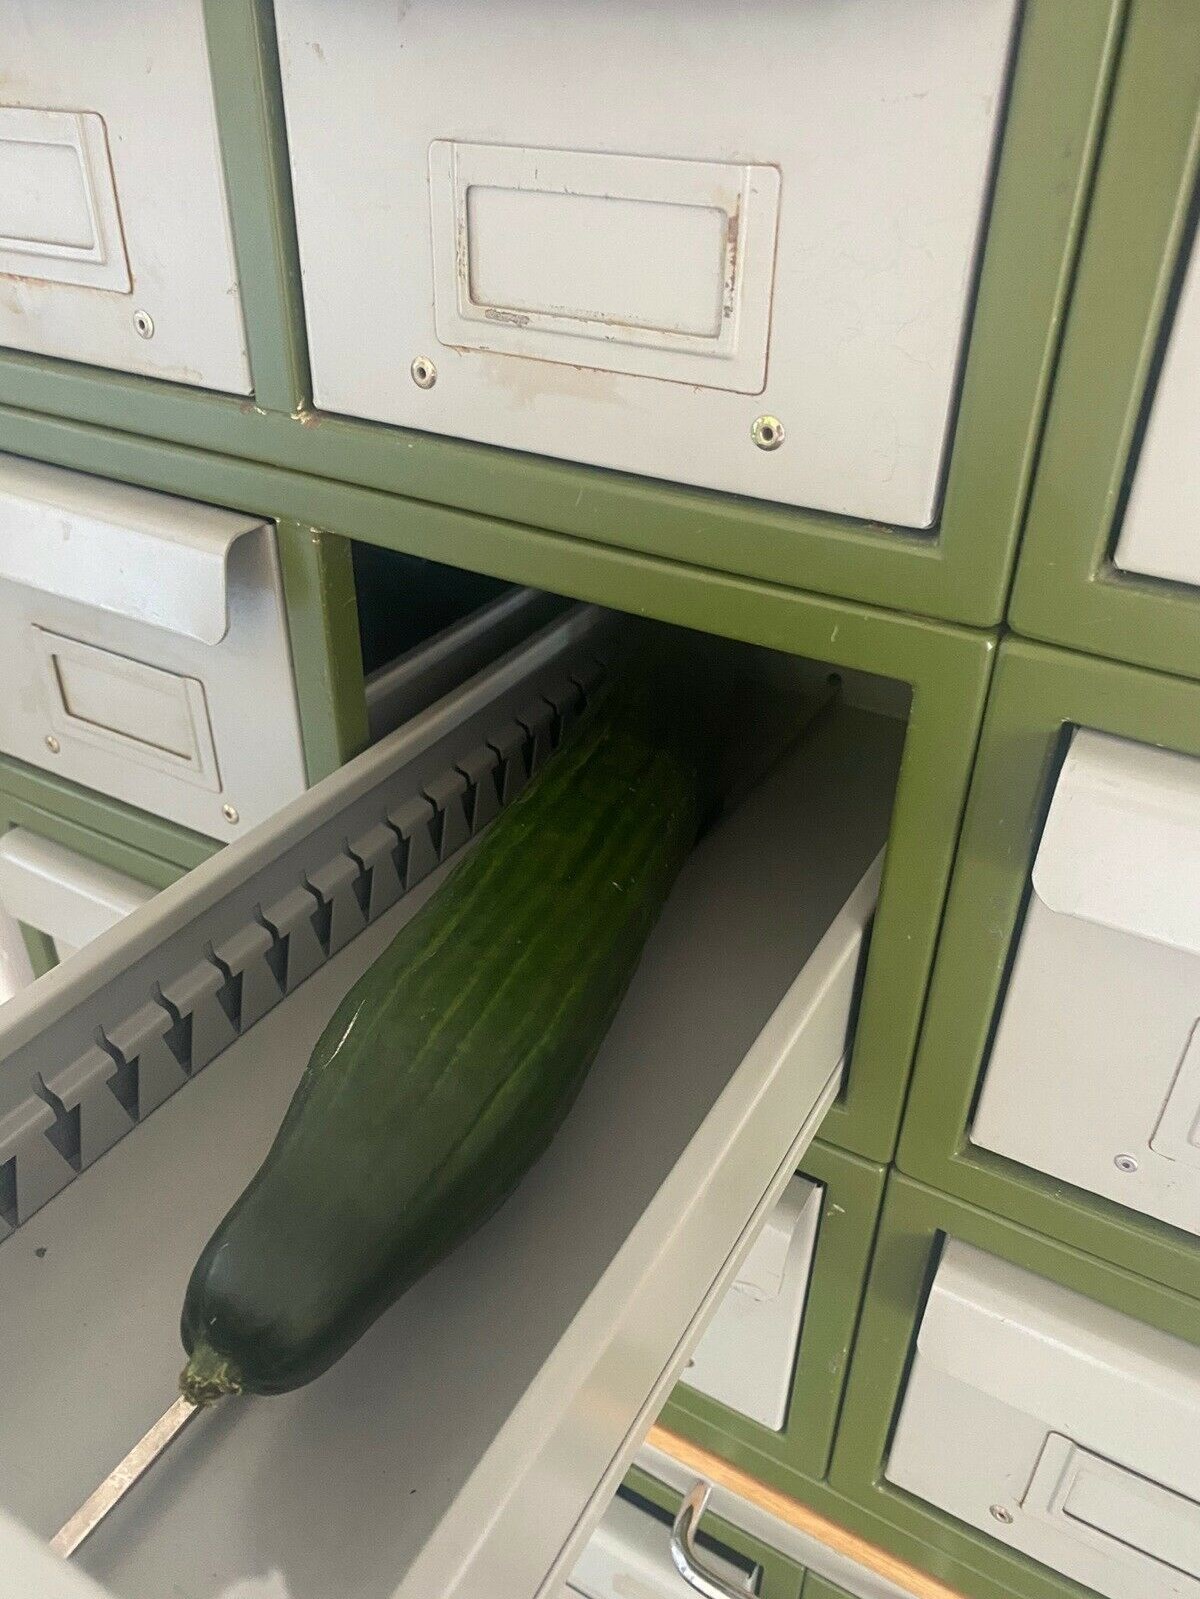 I annoncen har sælger naturligvis dokumenteret, hvor velegnet møblet er til opbevaring af agurker.